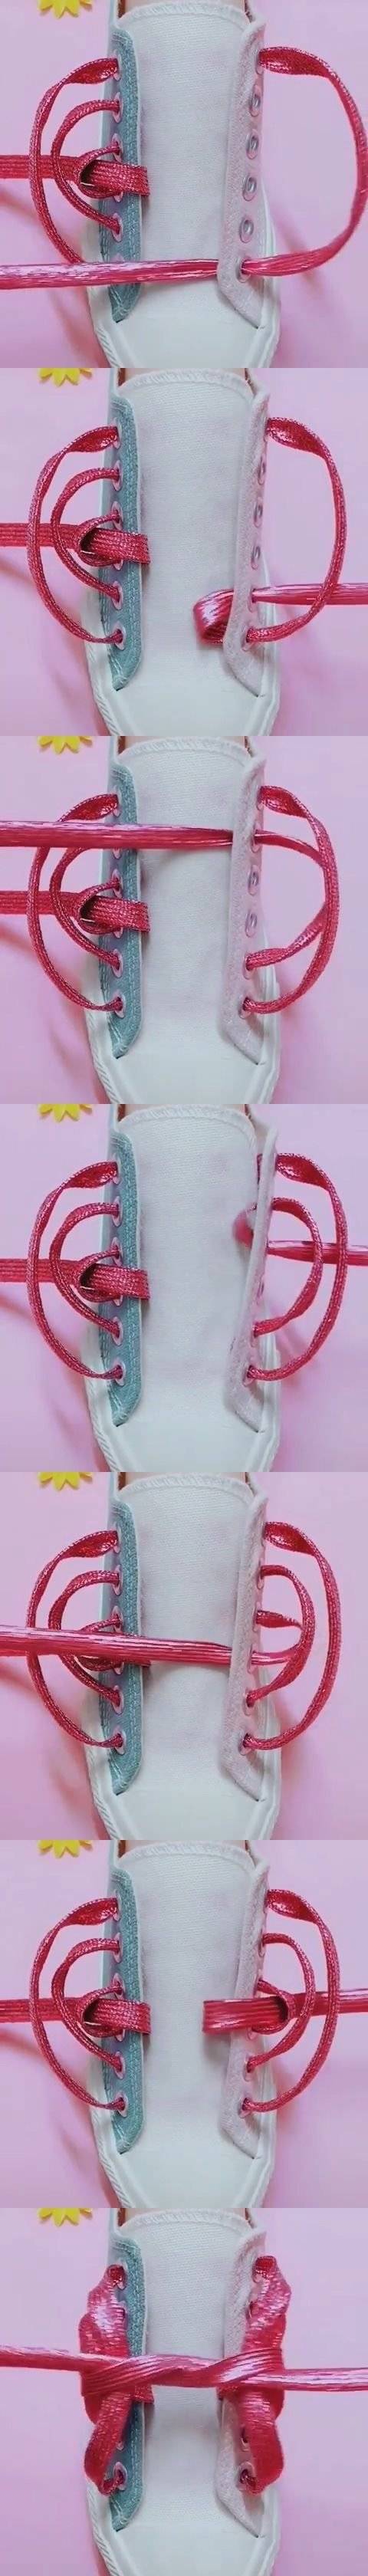 [스압] 신발끈 리본으로 묶는 방법.jpg